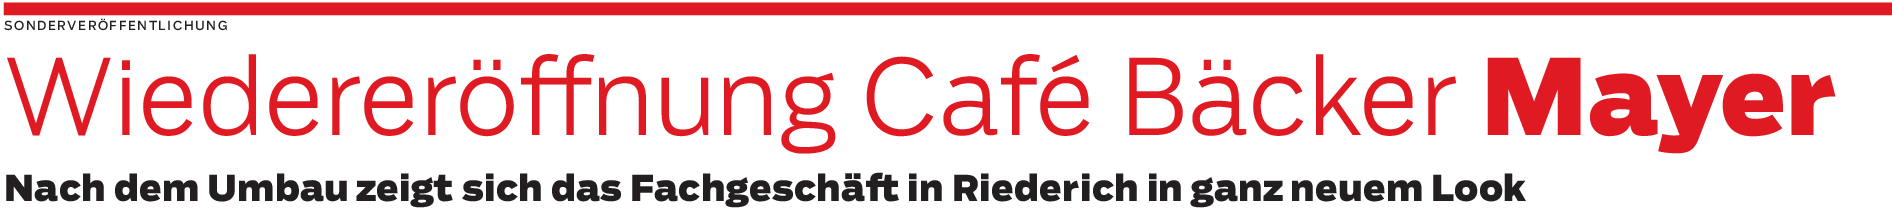 Riederich: Wintergarten und mehr Plätze im Café Bäcker Mayer